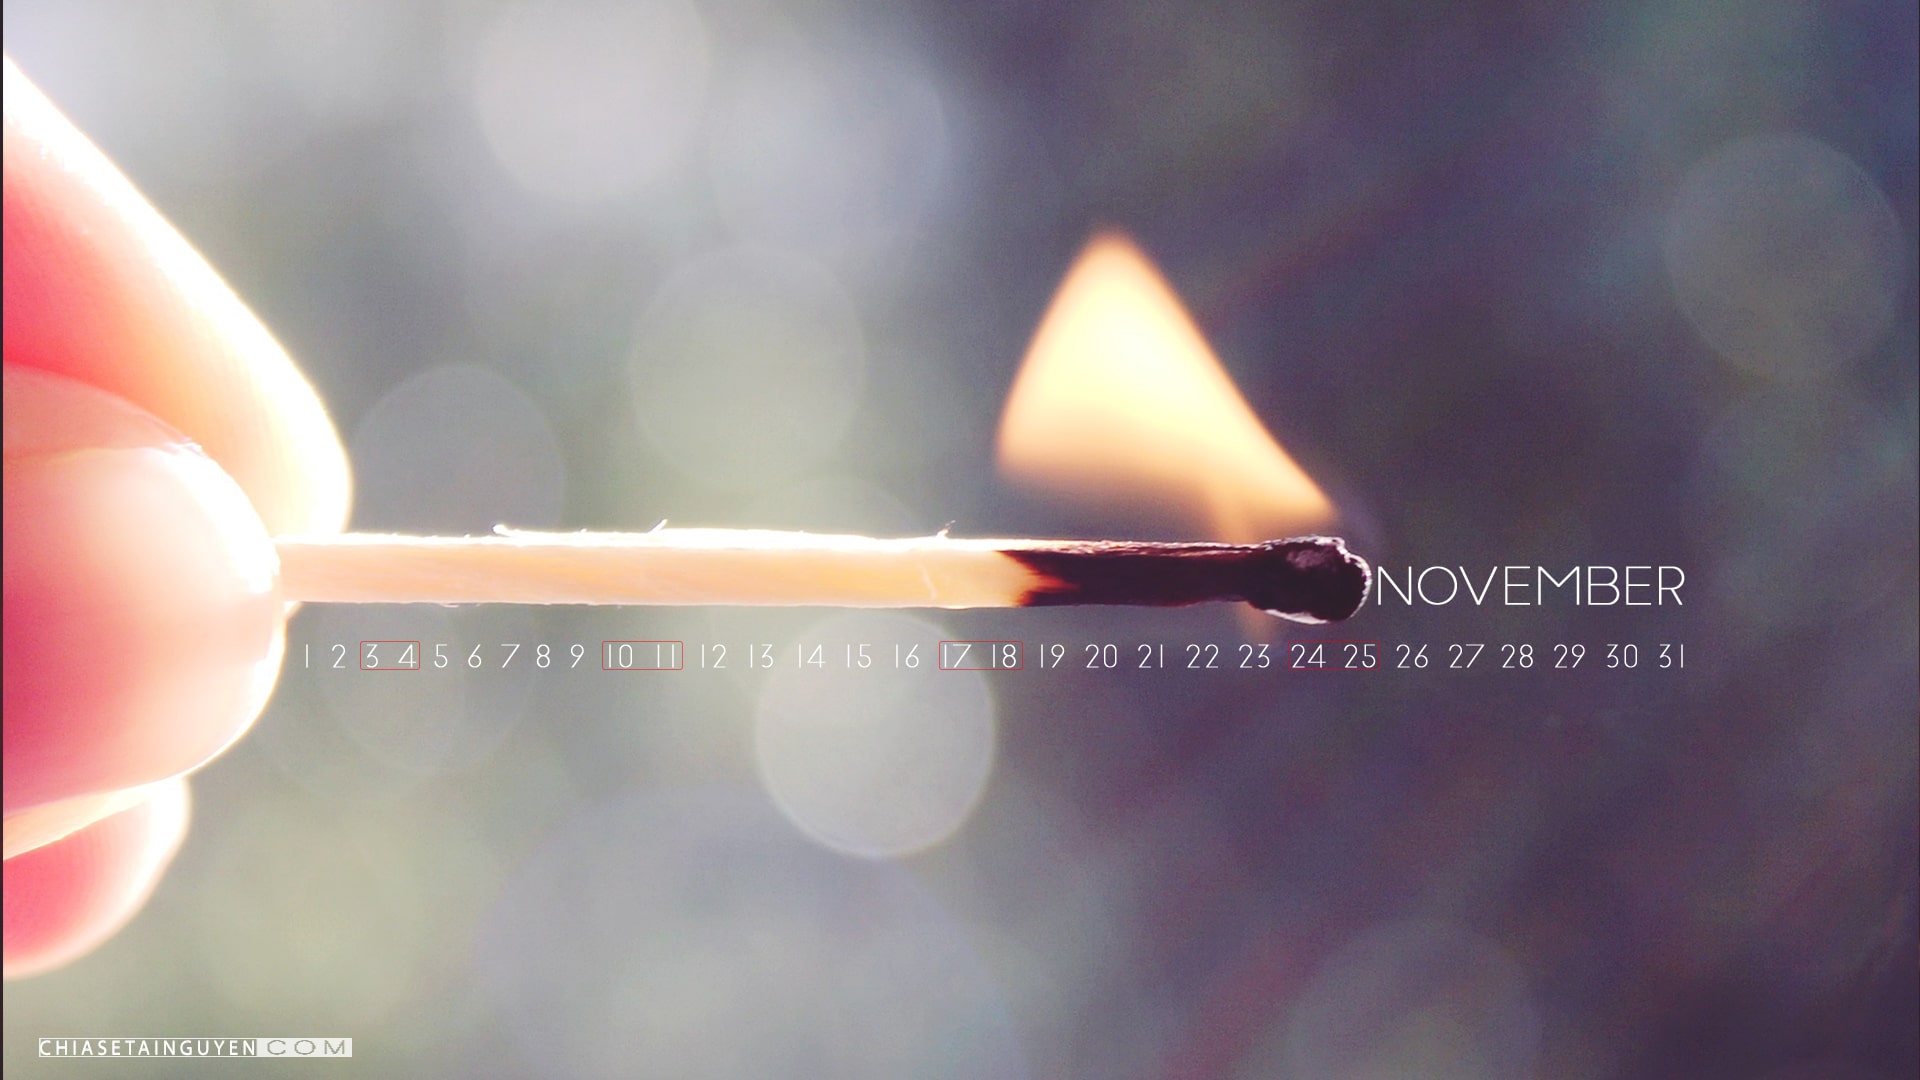 Trọn sắc thu cùng bộ hình nền Desktop tháng 11 có lịch đẹp lung linh nhất